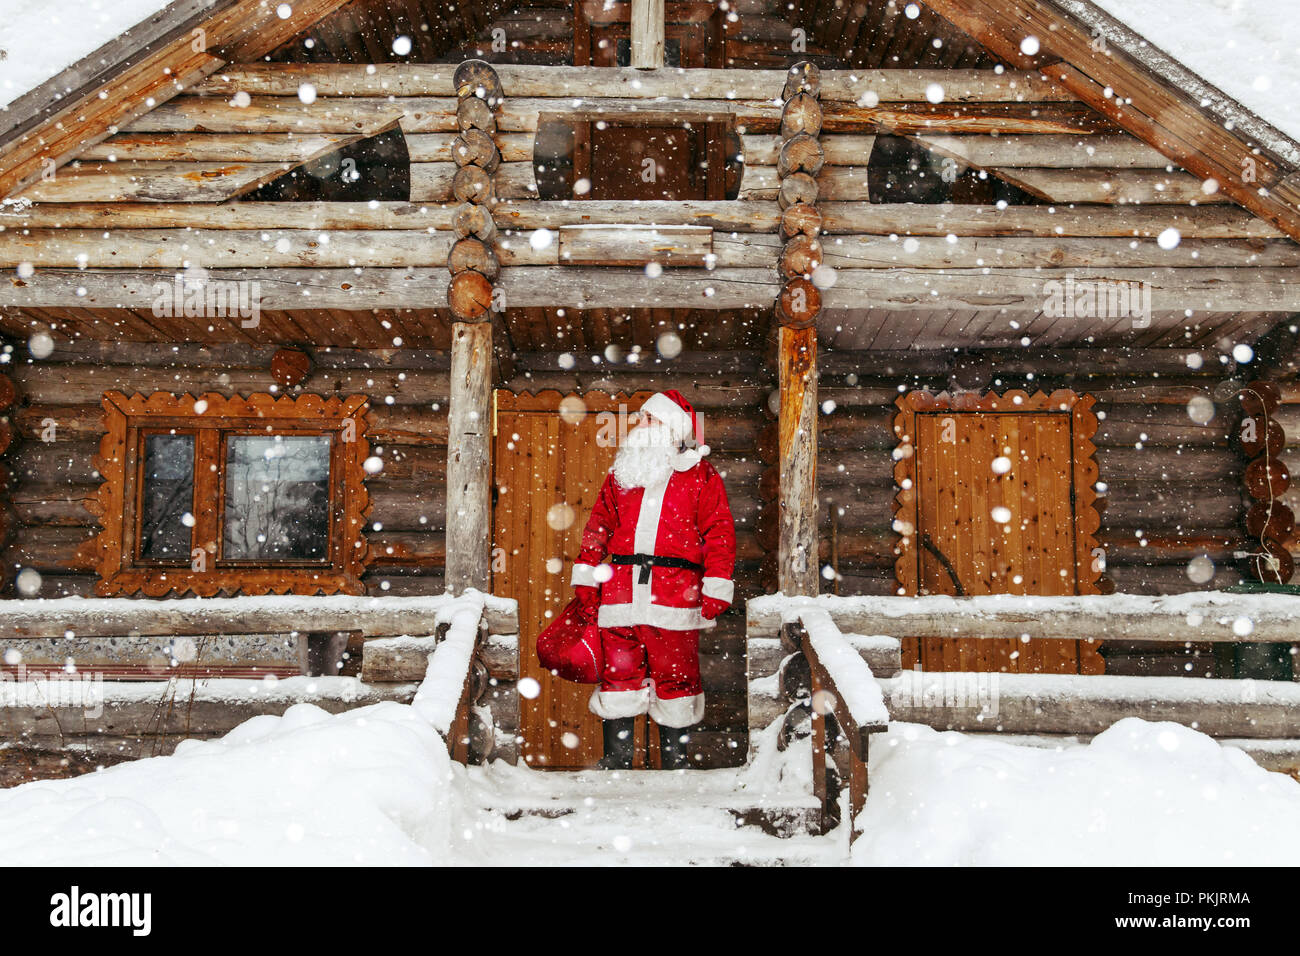 Das tägliche Leben von Santa Claus. Heimat von Santa Claus am Nordpol  Stockfotografie - Alamy